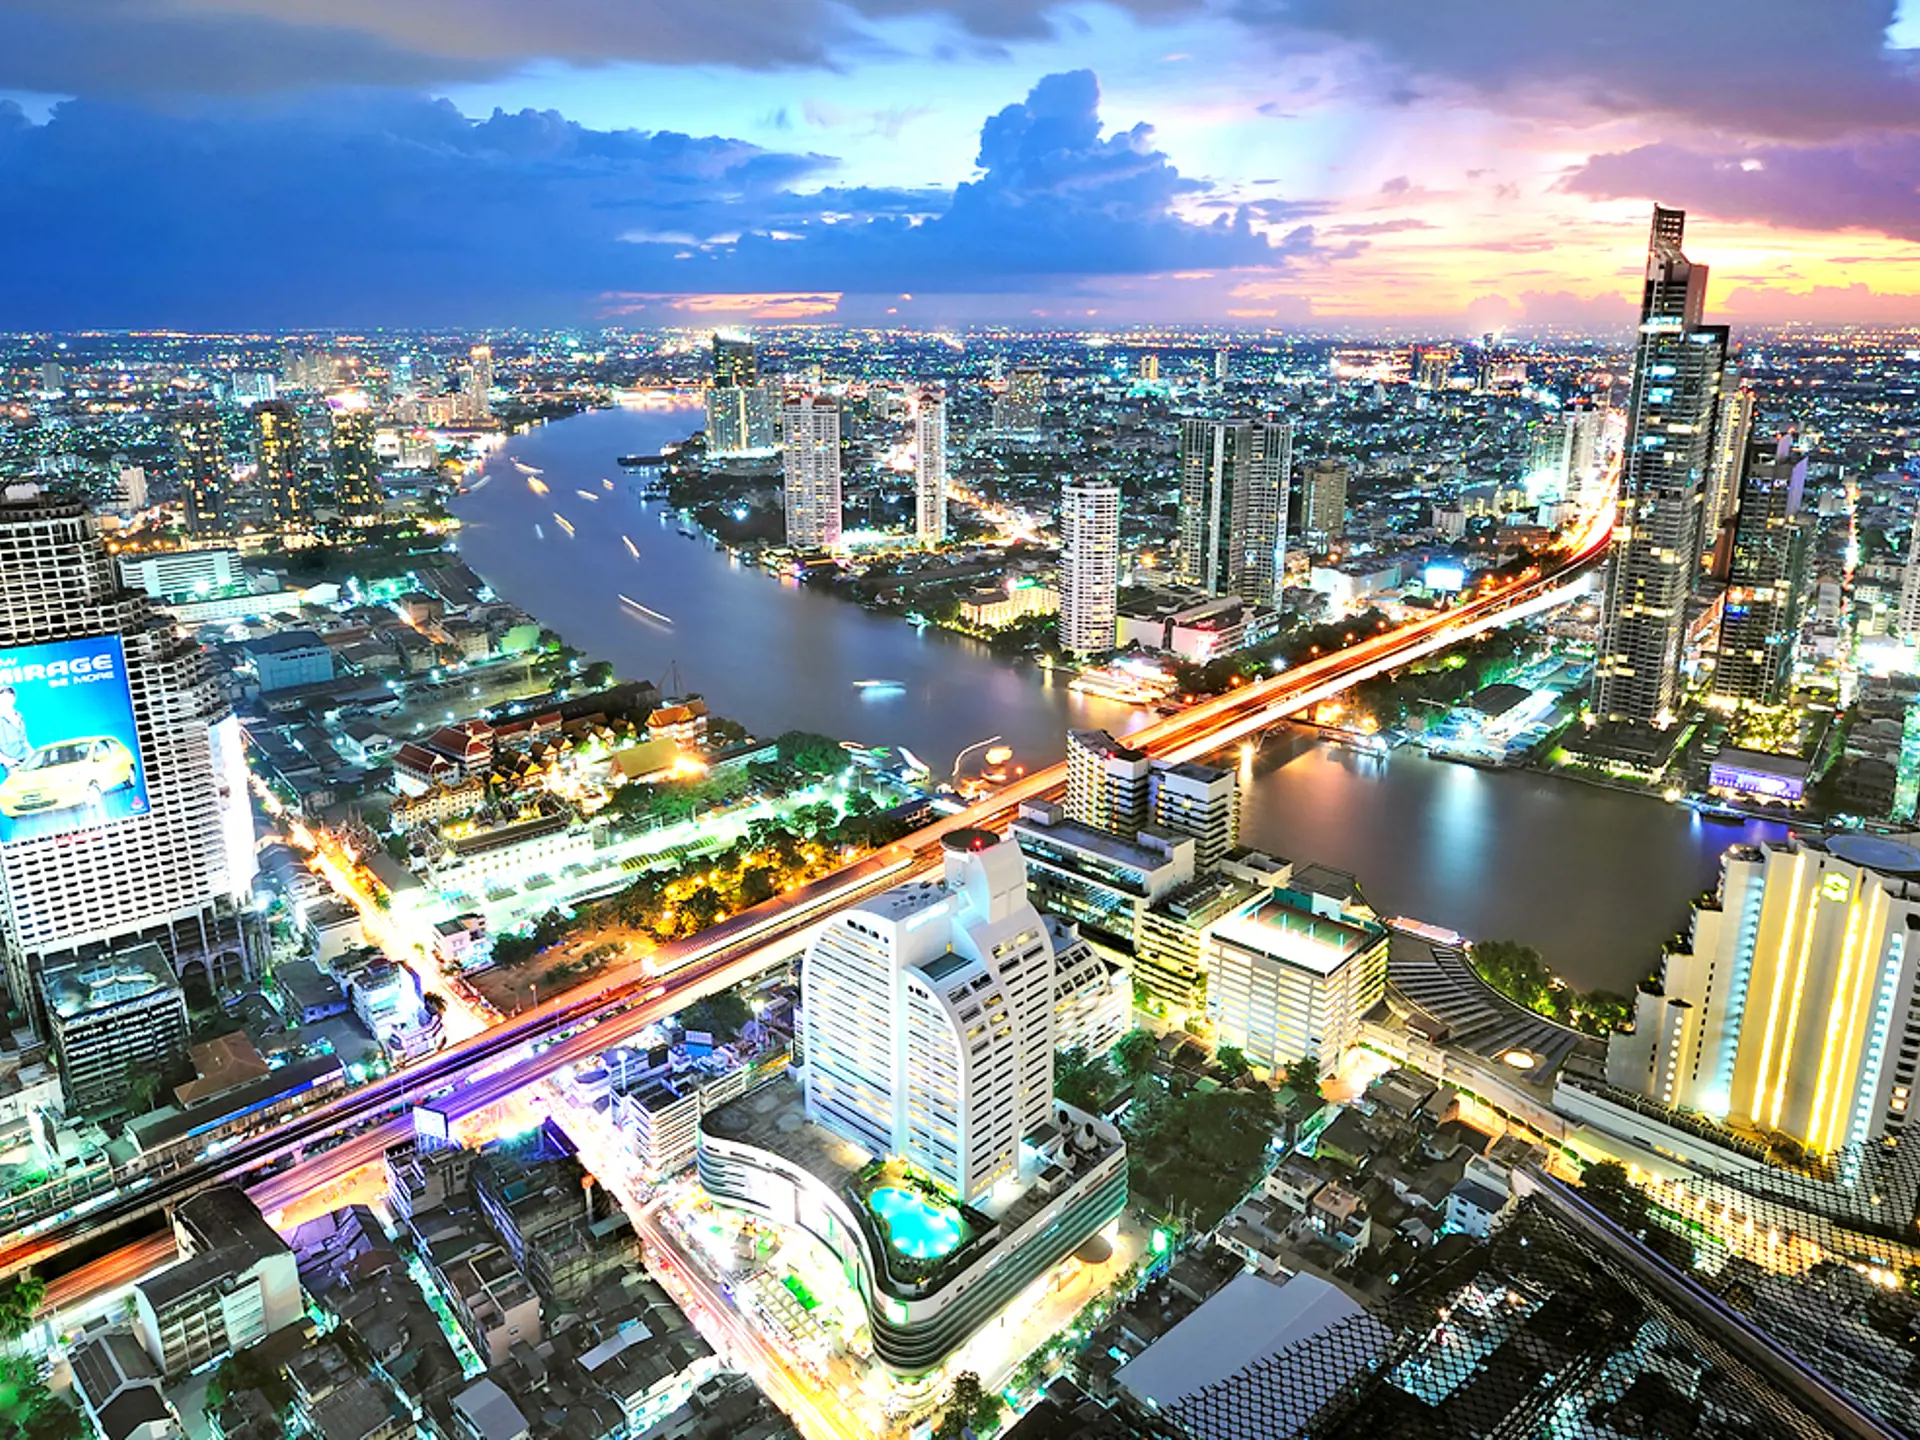 HOTEL I CENTRUM - I Bangkok indlogeres i Centre Point Silom, der ses i forgrunden (med pool). Her er der butikker, restauranter, gadekøkkener og let adgang til flodbåde og Sky Train